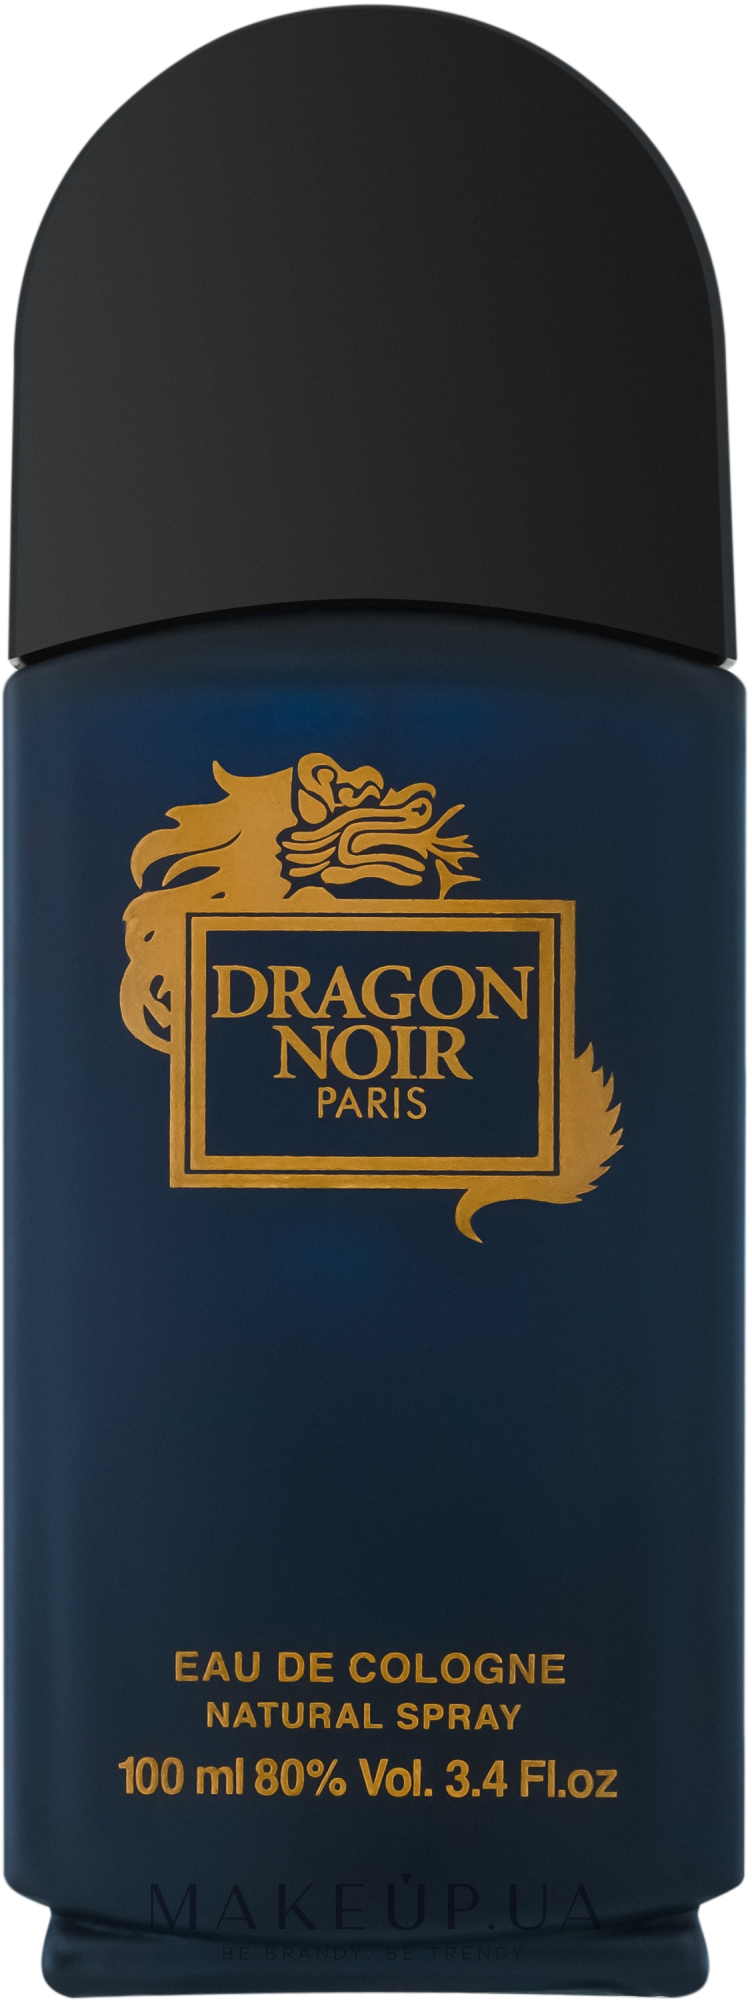 Dragon Noir одеколон 100мл. Dragon Noir Eau de Cologne n.a. Cosmetic. Драгон Ноир направление аромата. Dragon Noir в 90-х. Dragon noir